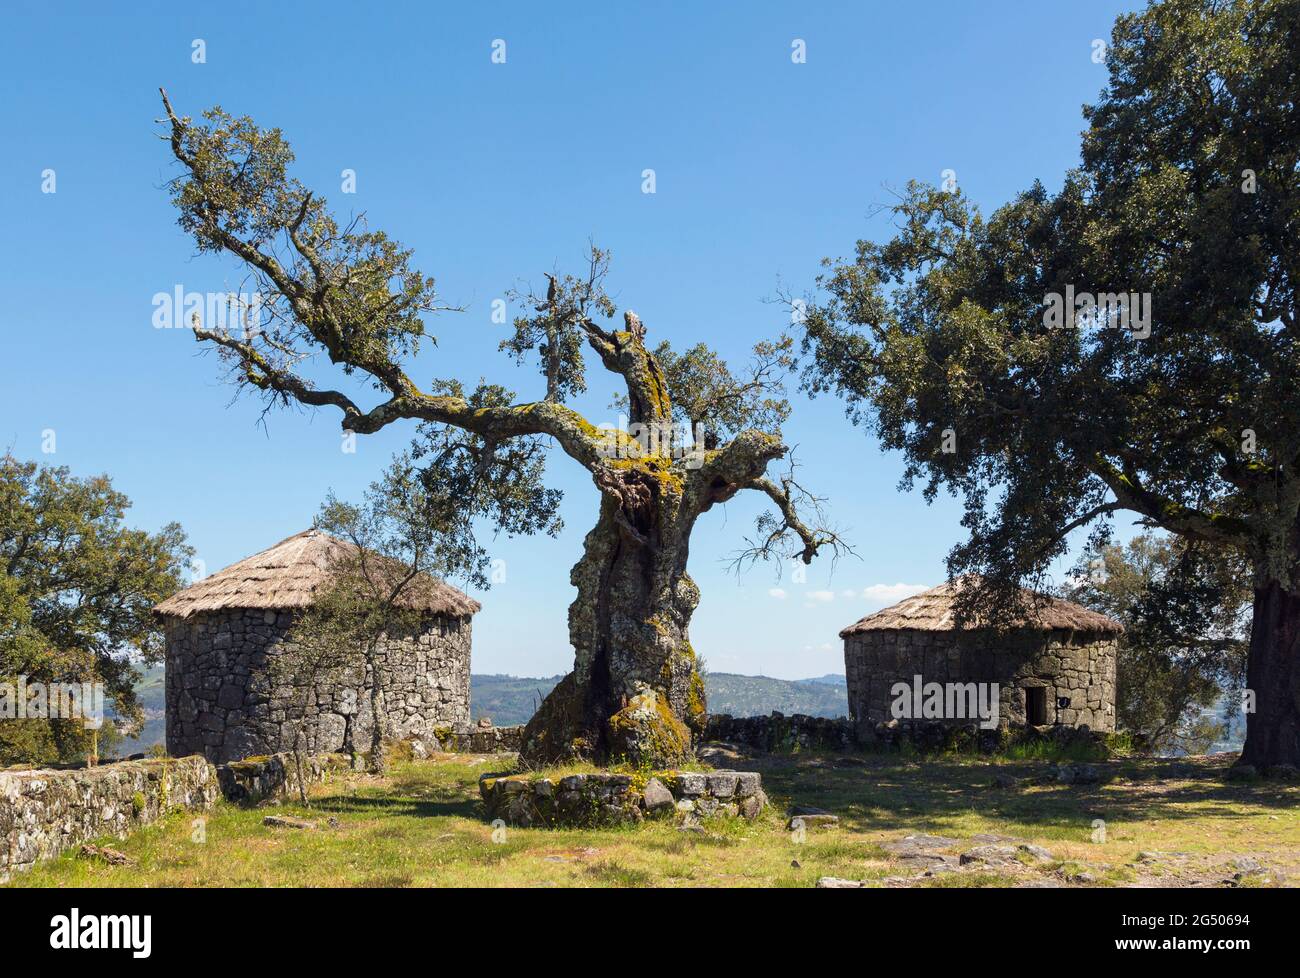 Citania de Briteiros, Bezirk Braga, Portugal. Eisenzeit Siedlung. Zwei rekonstruierte Steinhäuser. Eine der wichtigsten archäologischen Stätten Portugals Stockfoto